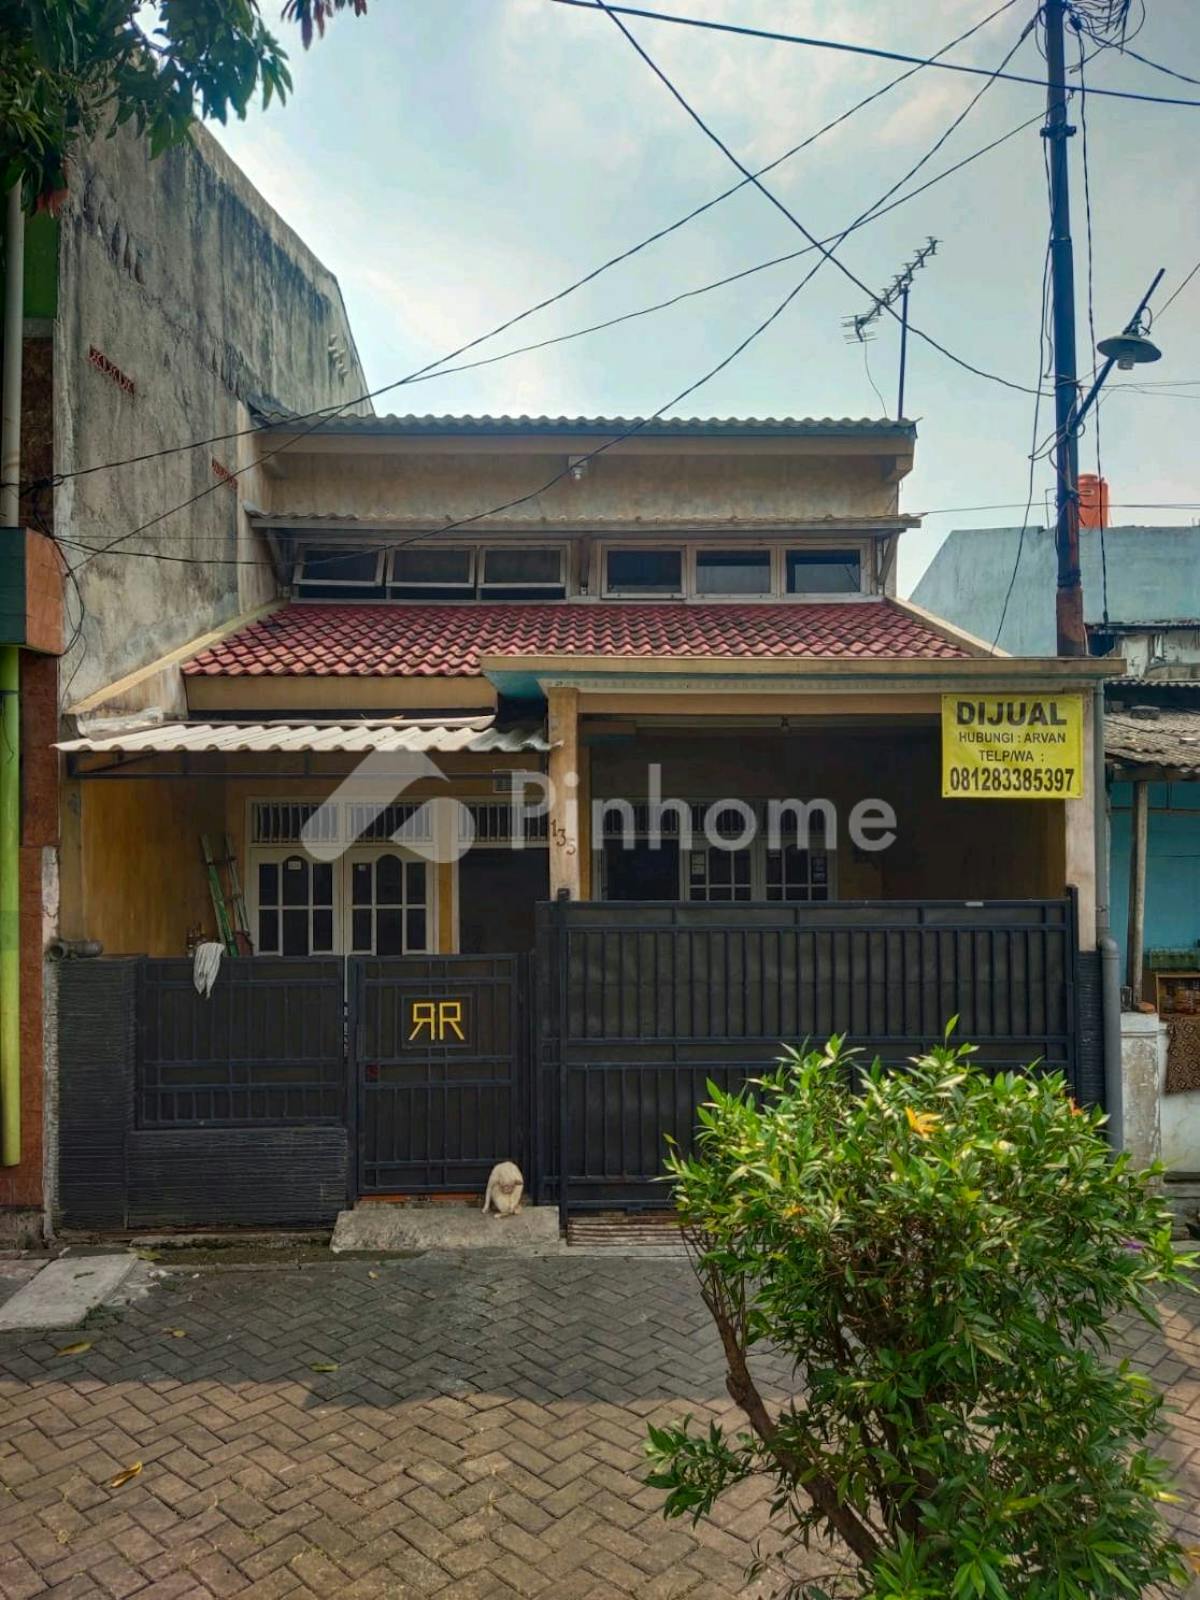 Dijual Rumah 2 Lantai dan Bebas Banjir di Jl. Kentang VI No. 135 - Gambar 1